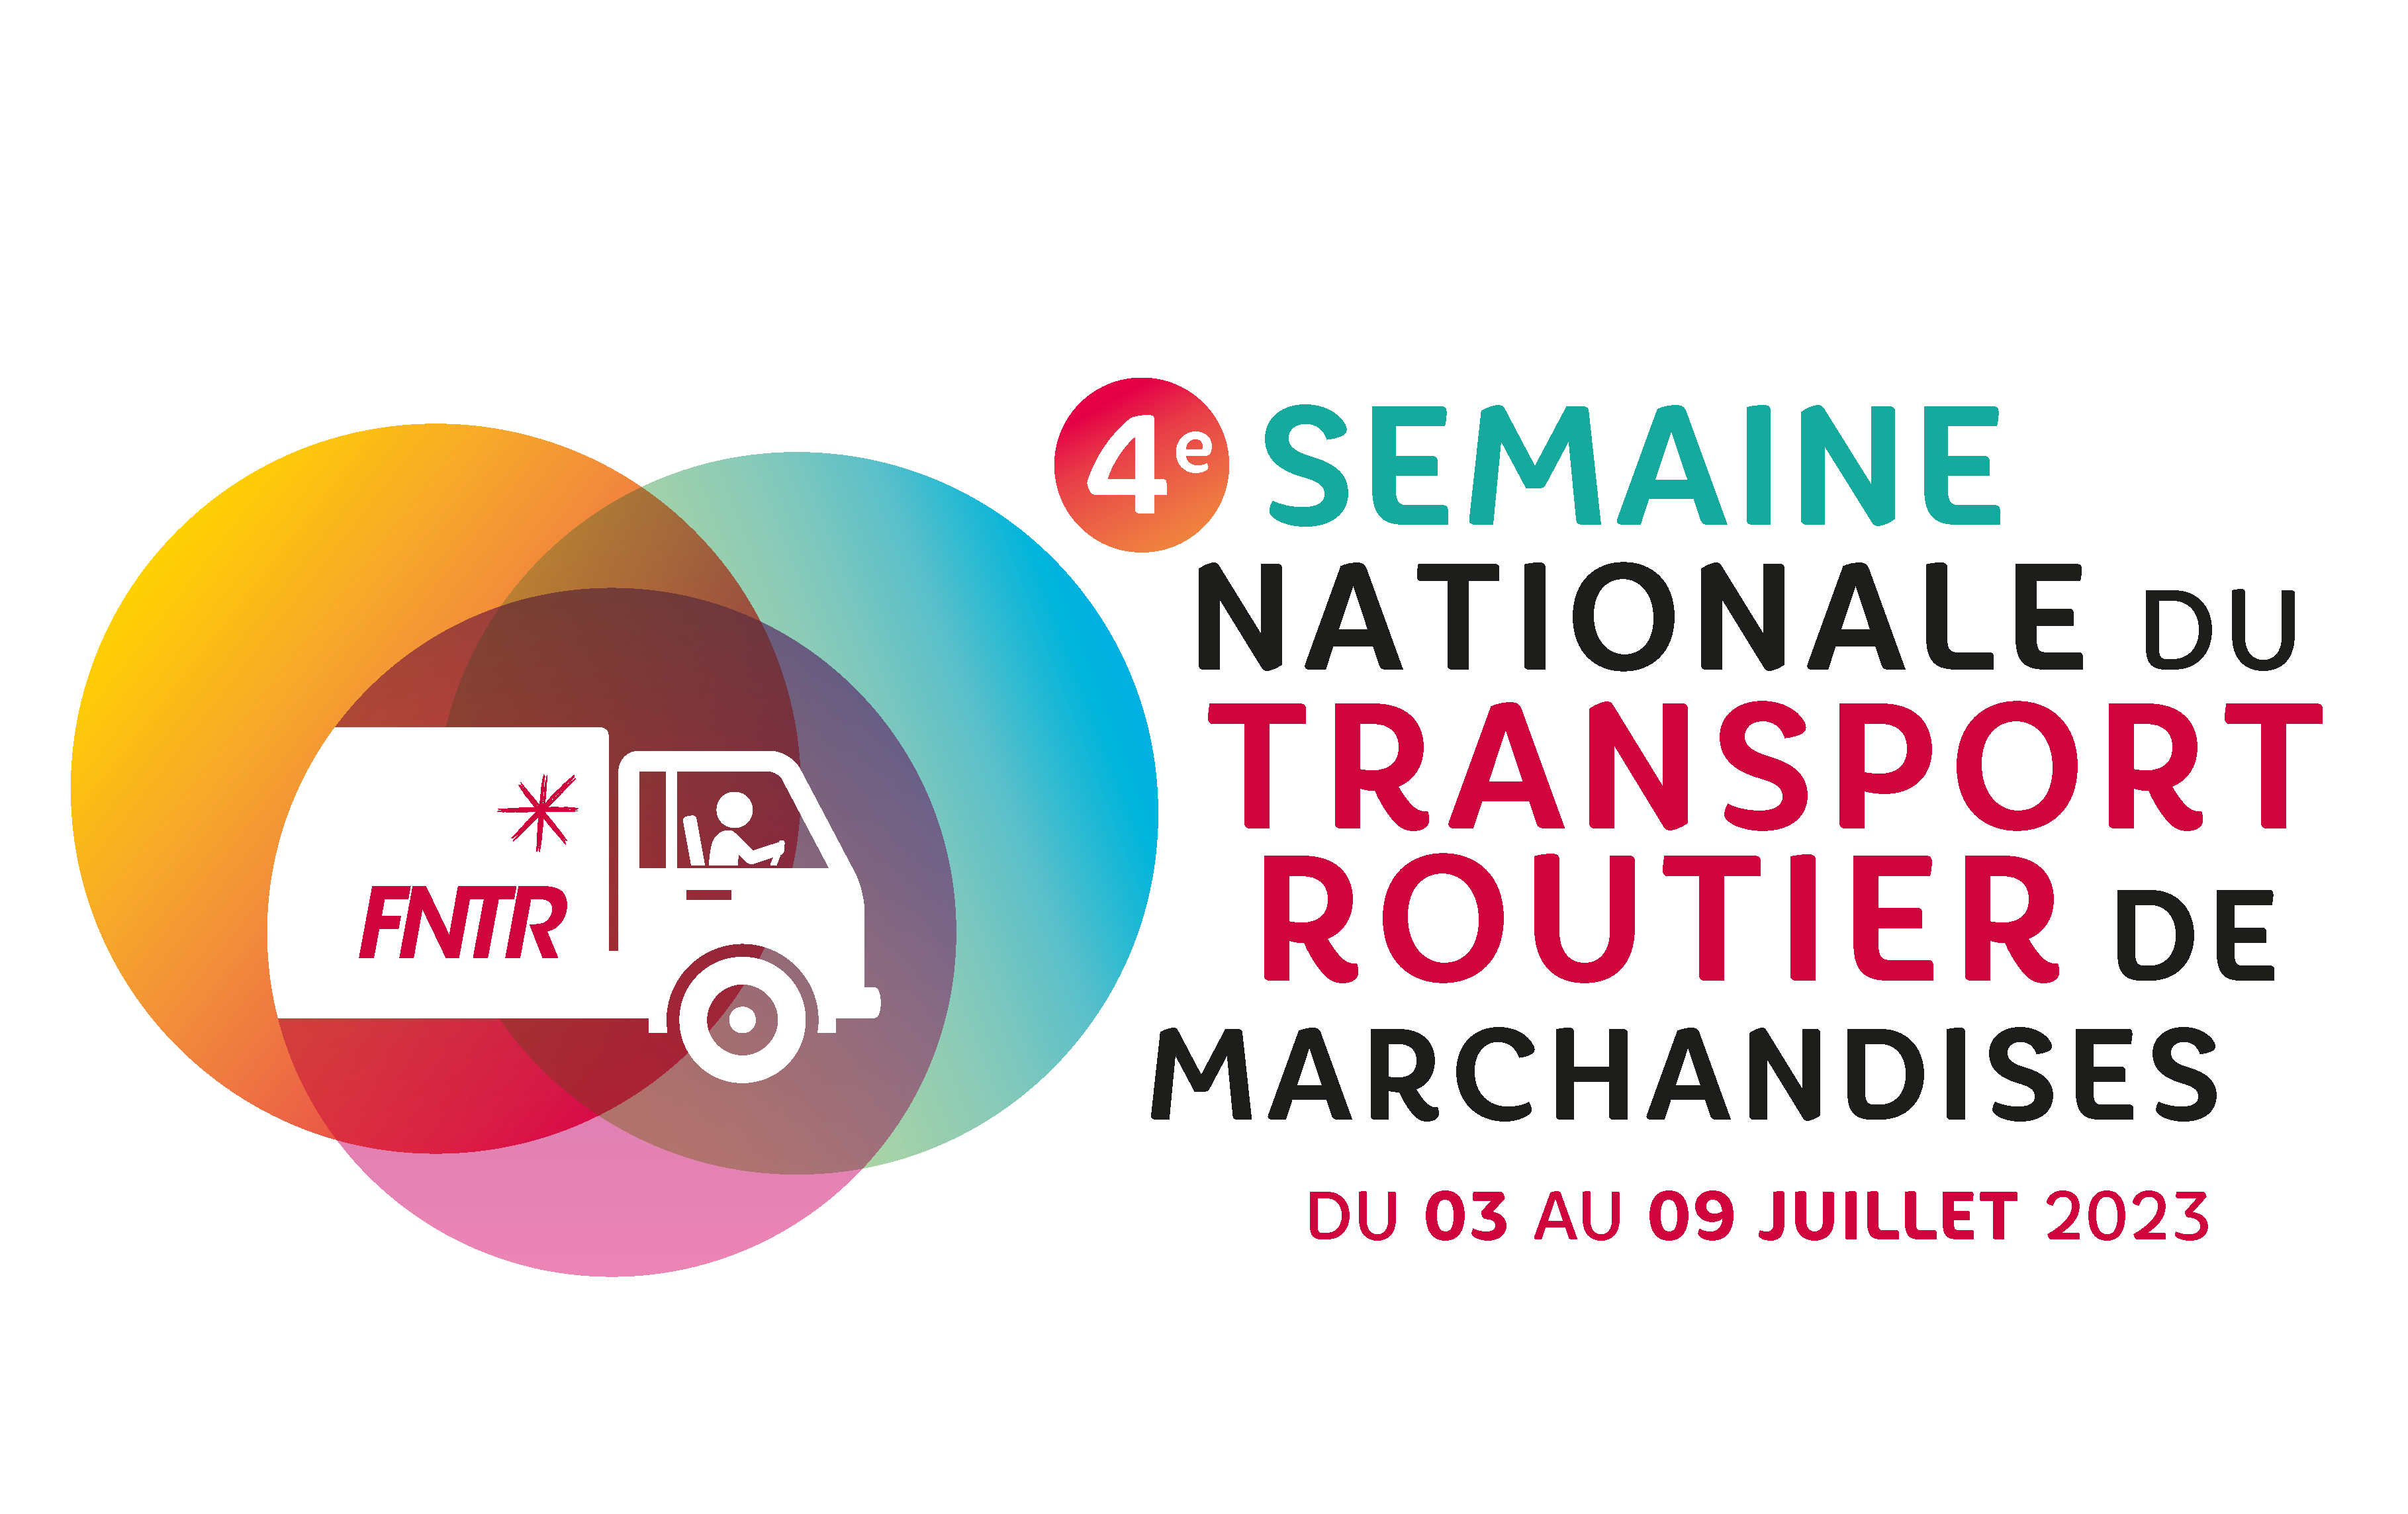 4ème Semaine nationale du transport routier de marchandises